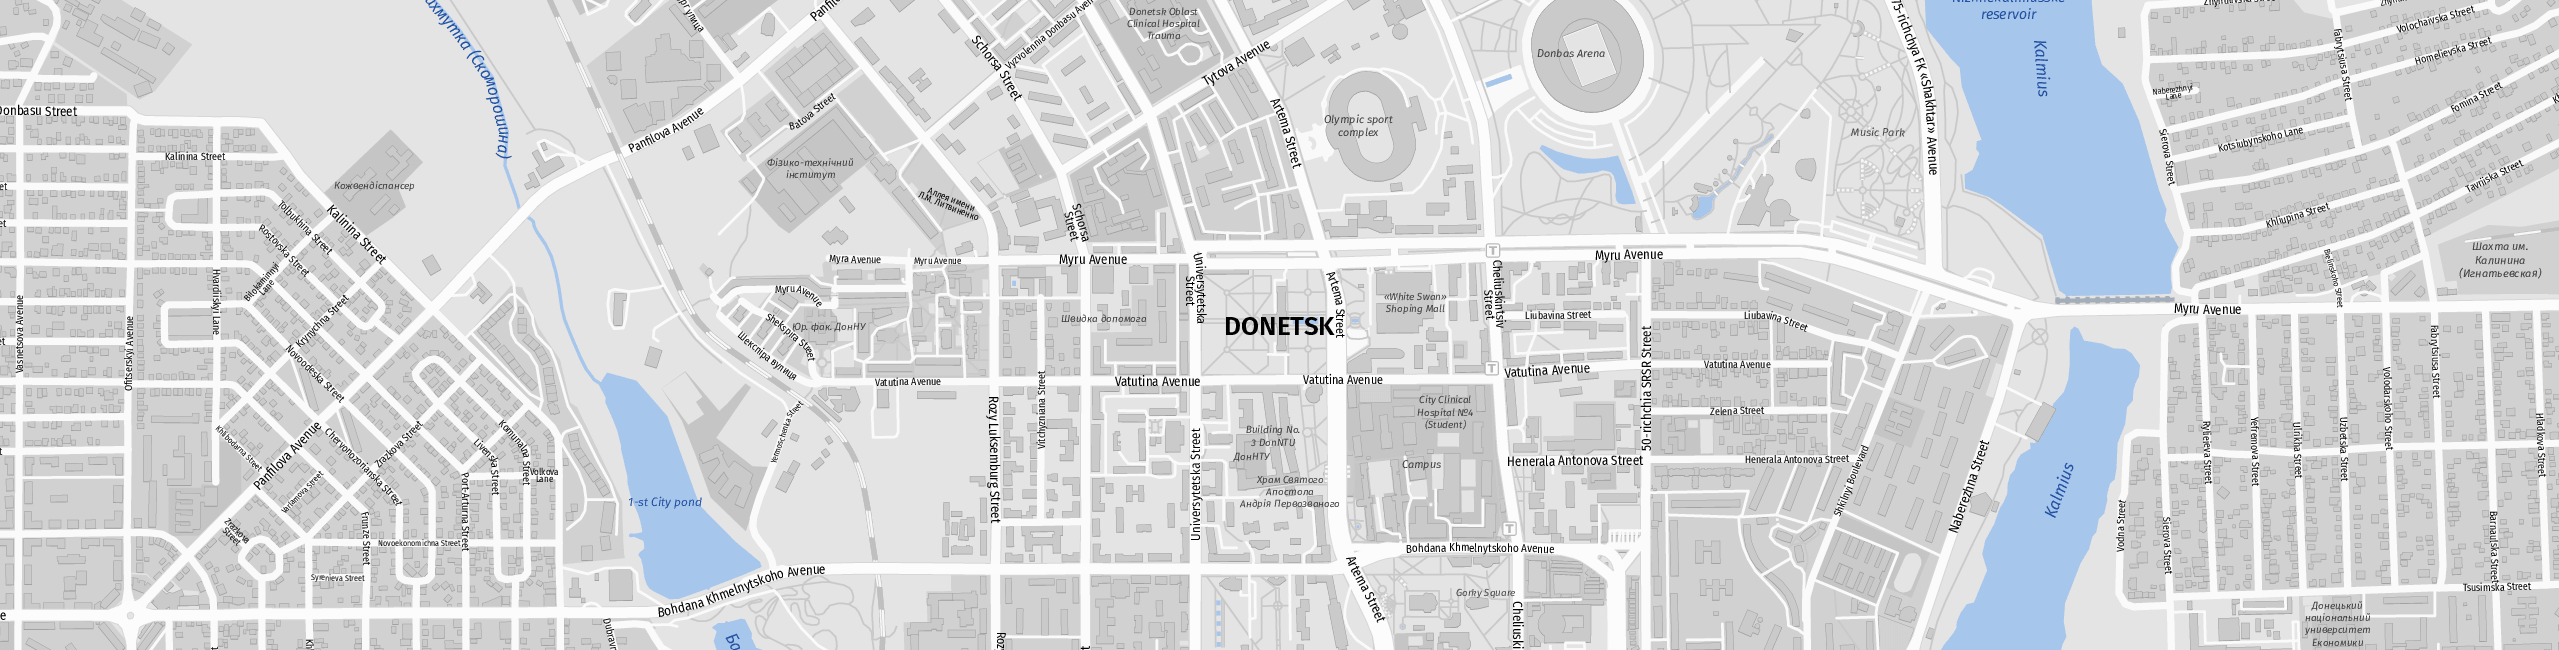 Stadtplan Donetsk zum Downloaden.